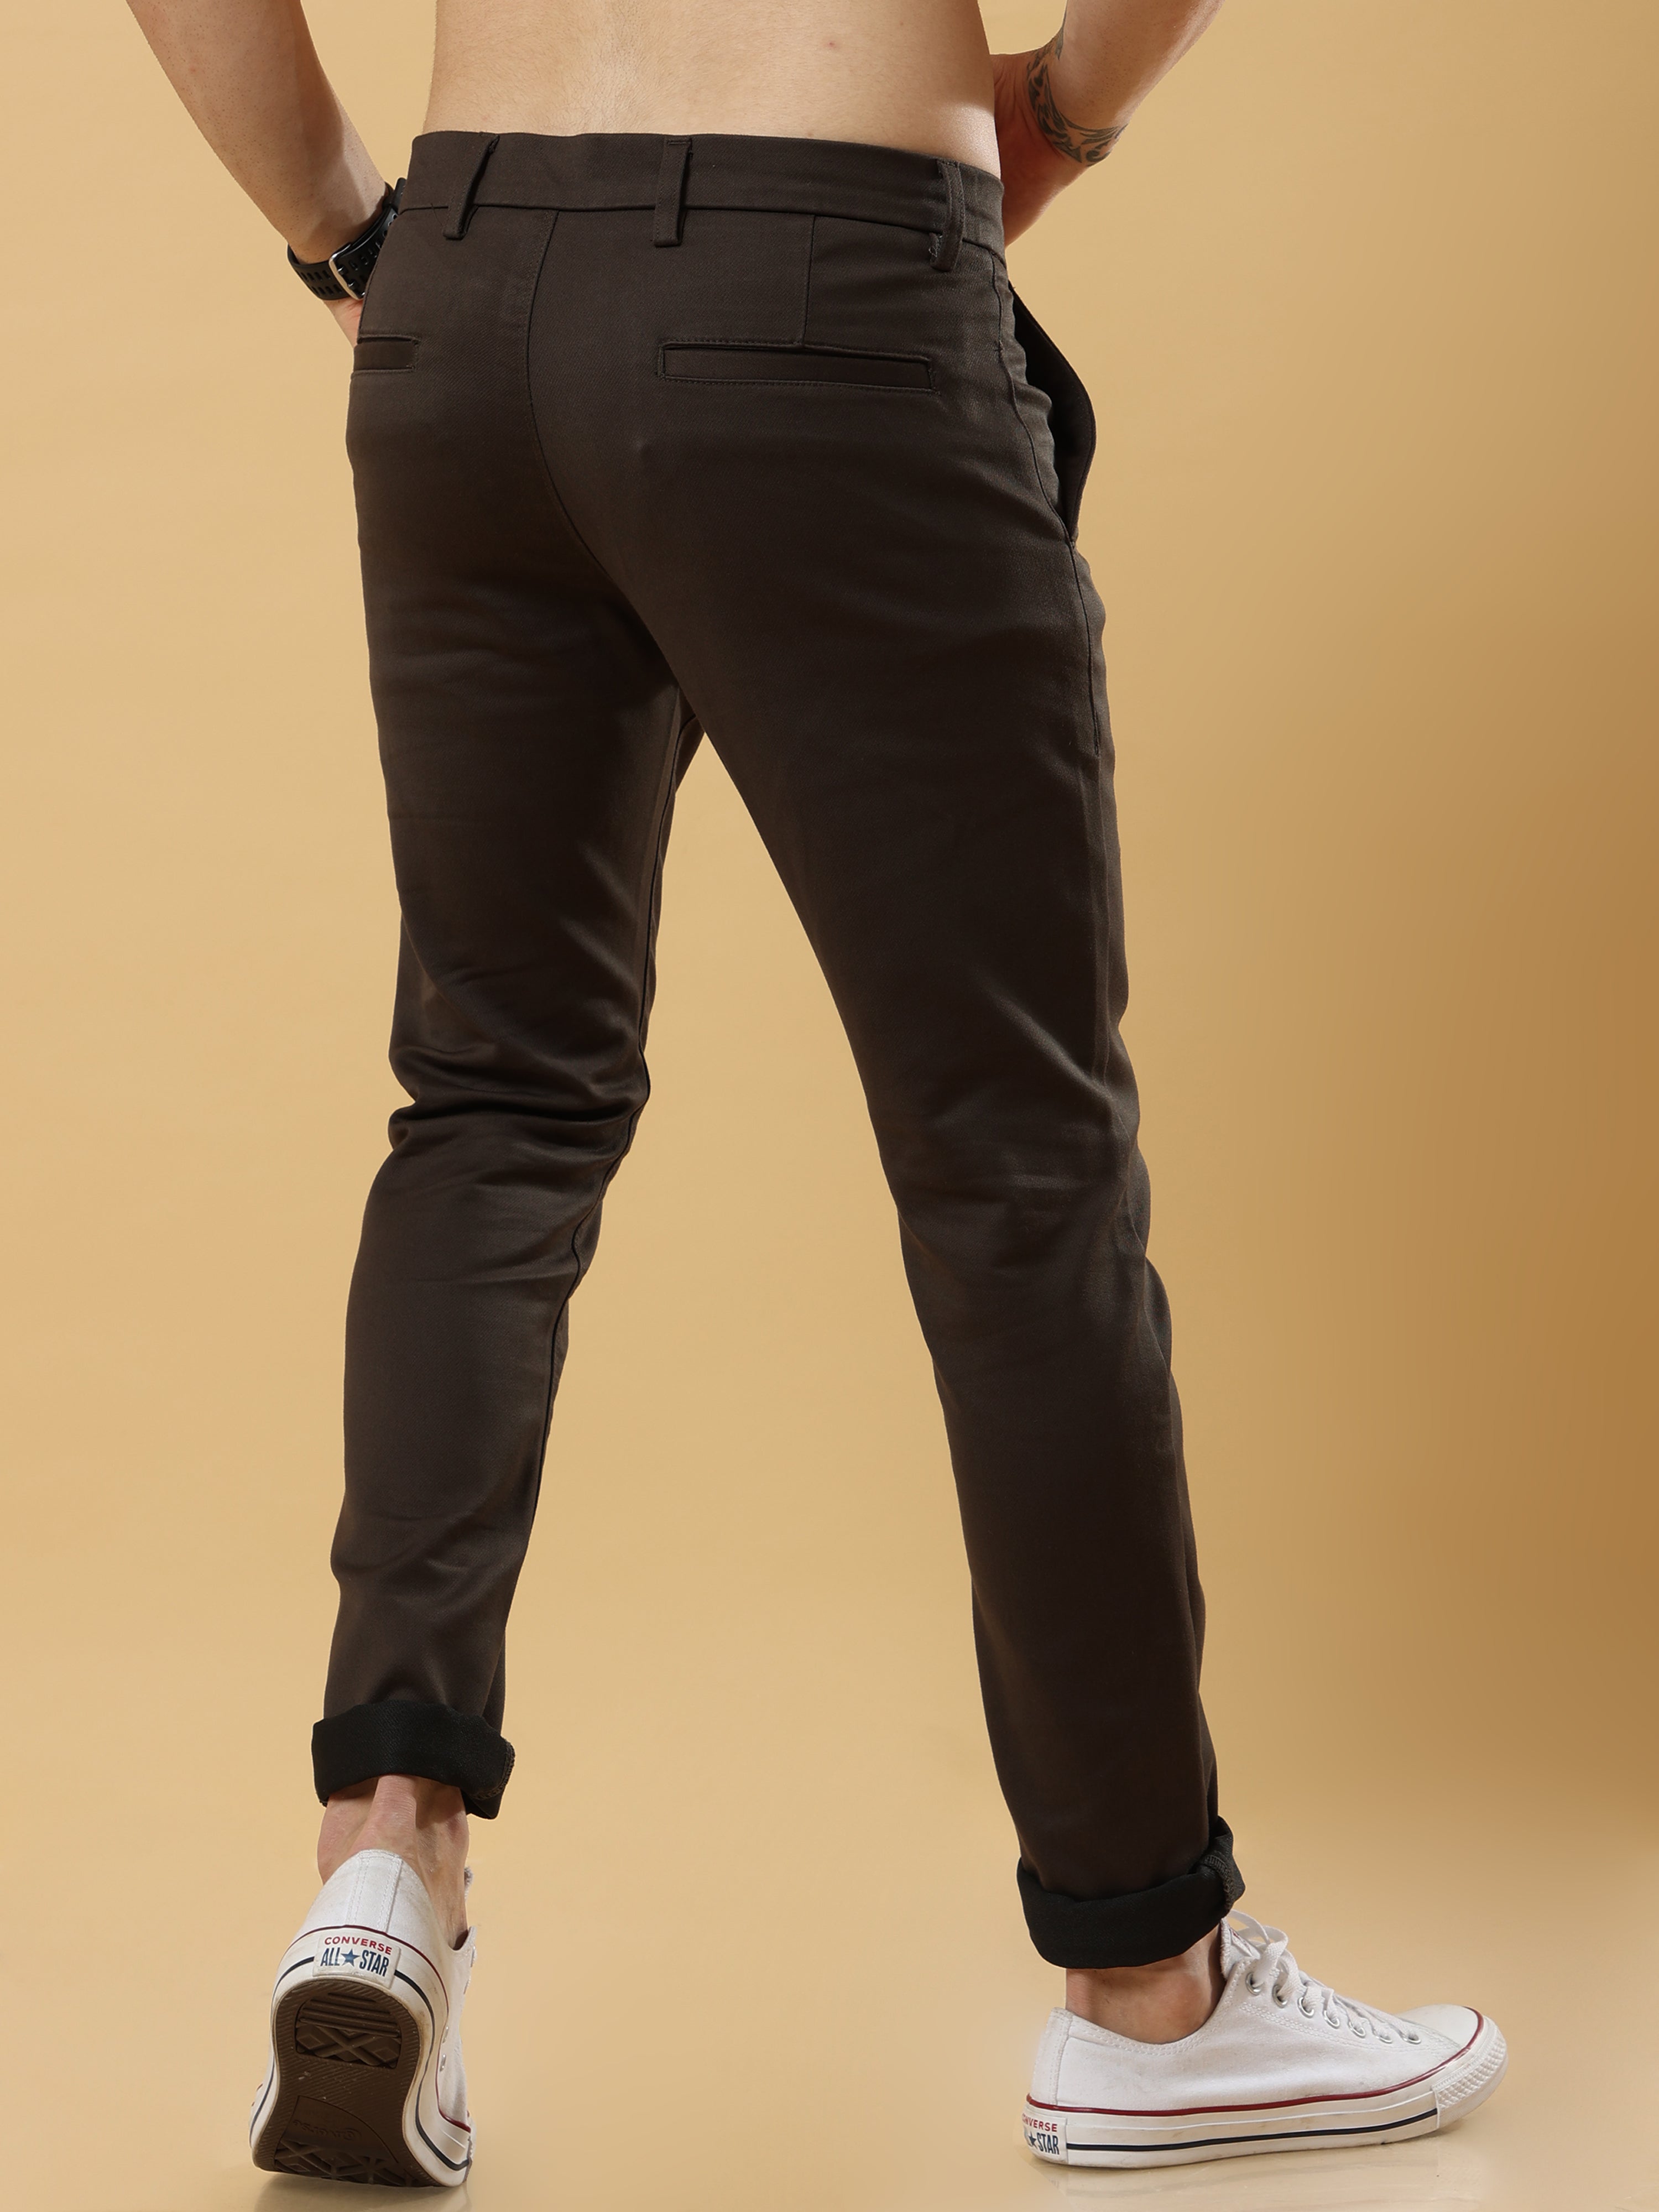 Regular Fit Ripstop Cargo Pants - Dark brown - Men | H&M US